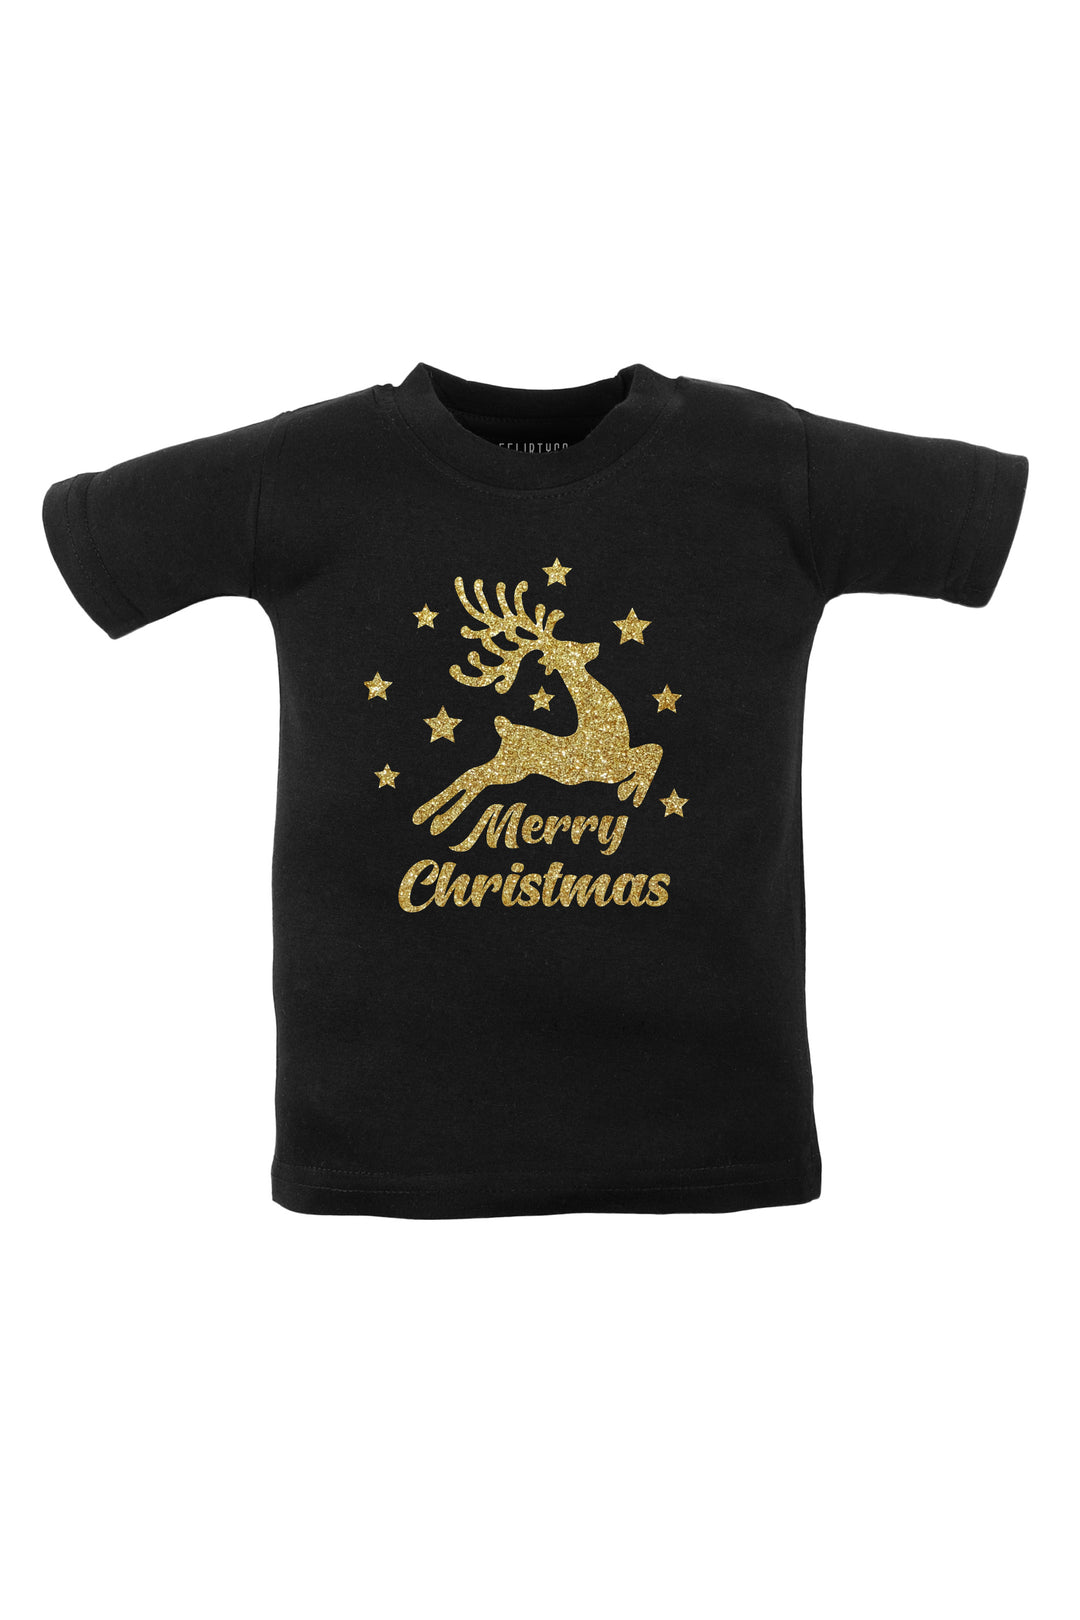 Merry Christmas Glitter Kids T Shirt